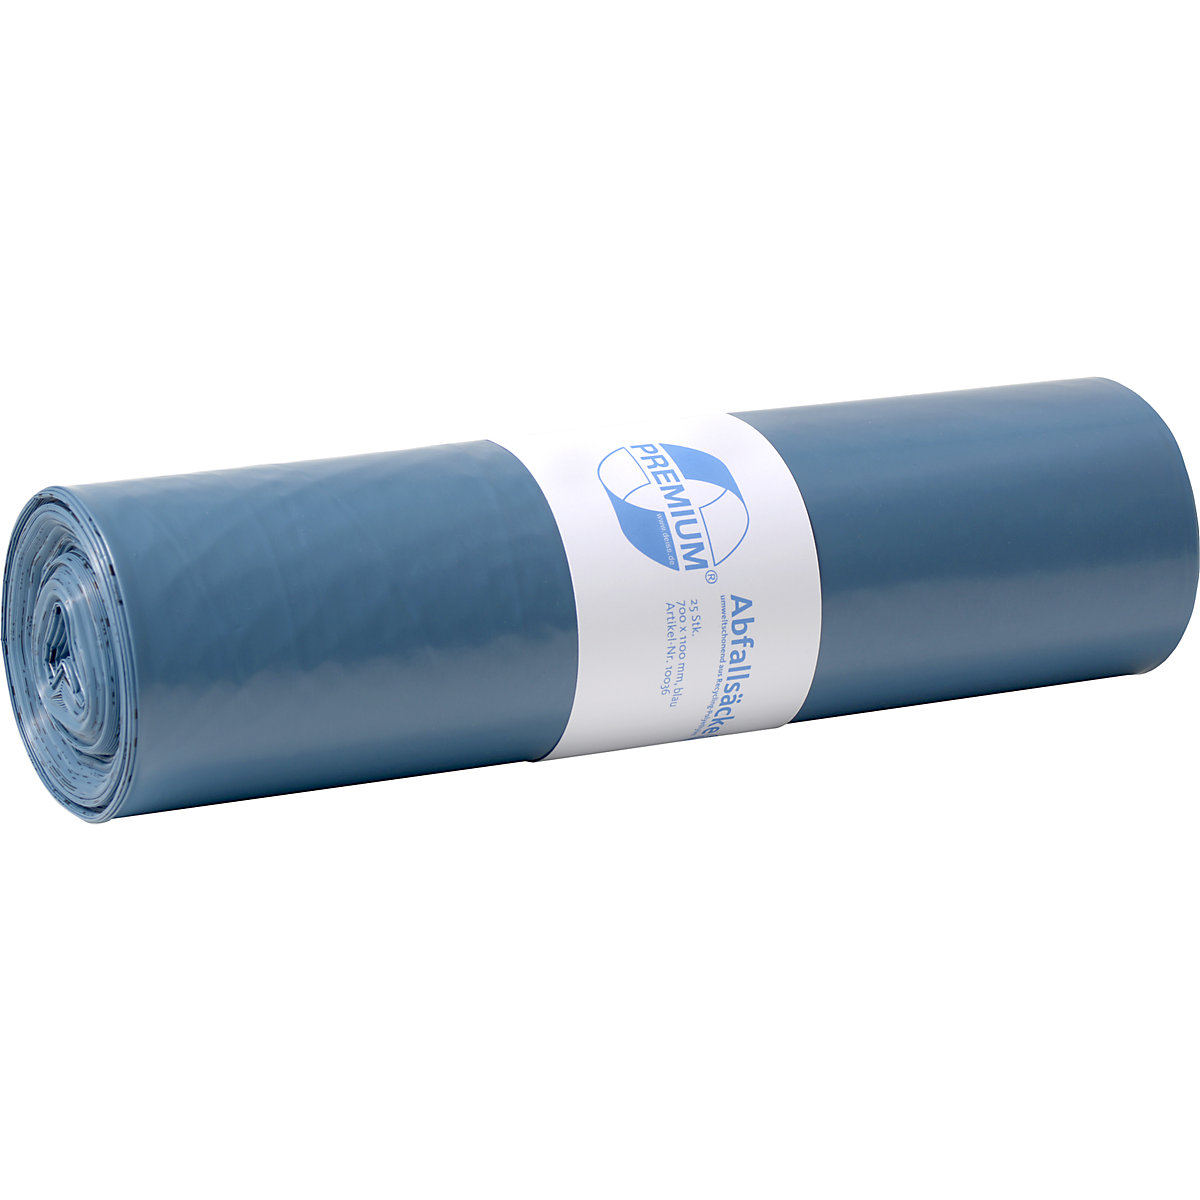 Szabványos hulladékgyűjtő zsákok, LDPE, 120 l, cs. e. 250 db, szé x ma 700 x 1100 mm, anyagvastagság 60 µm, kék